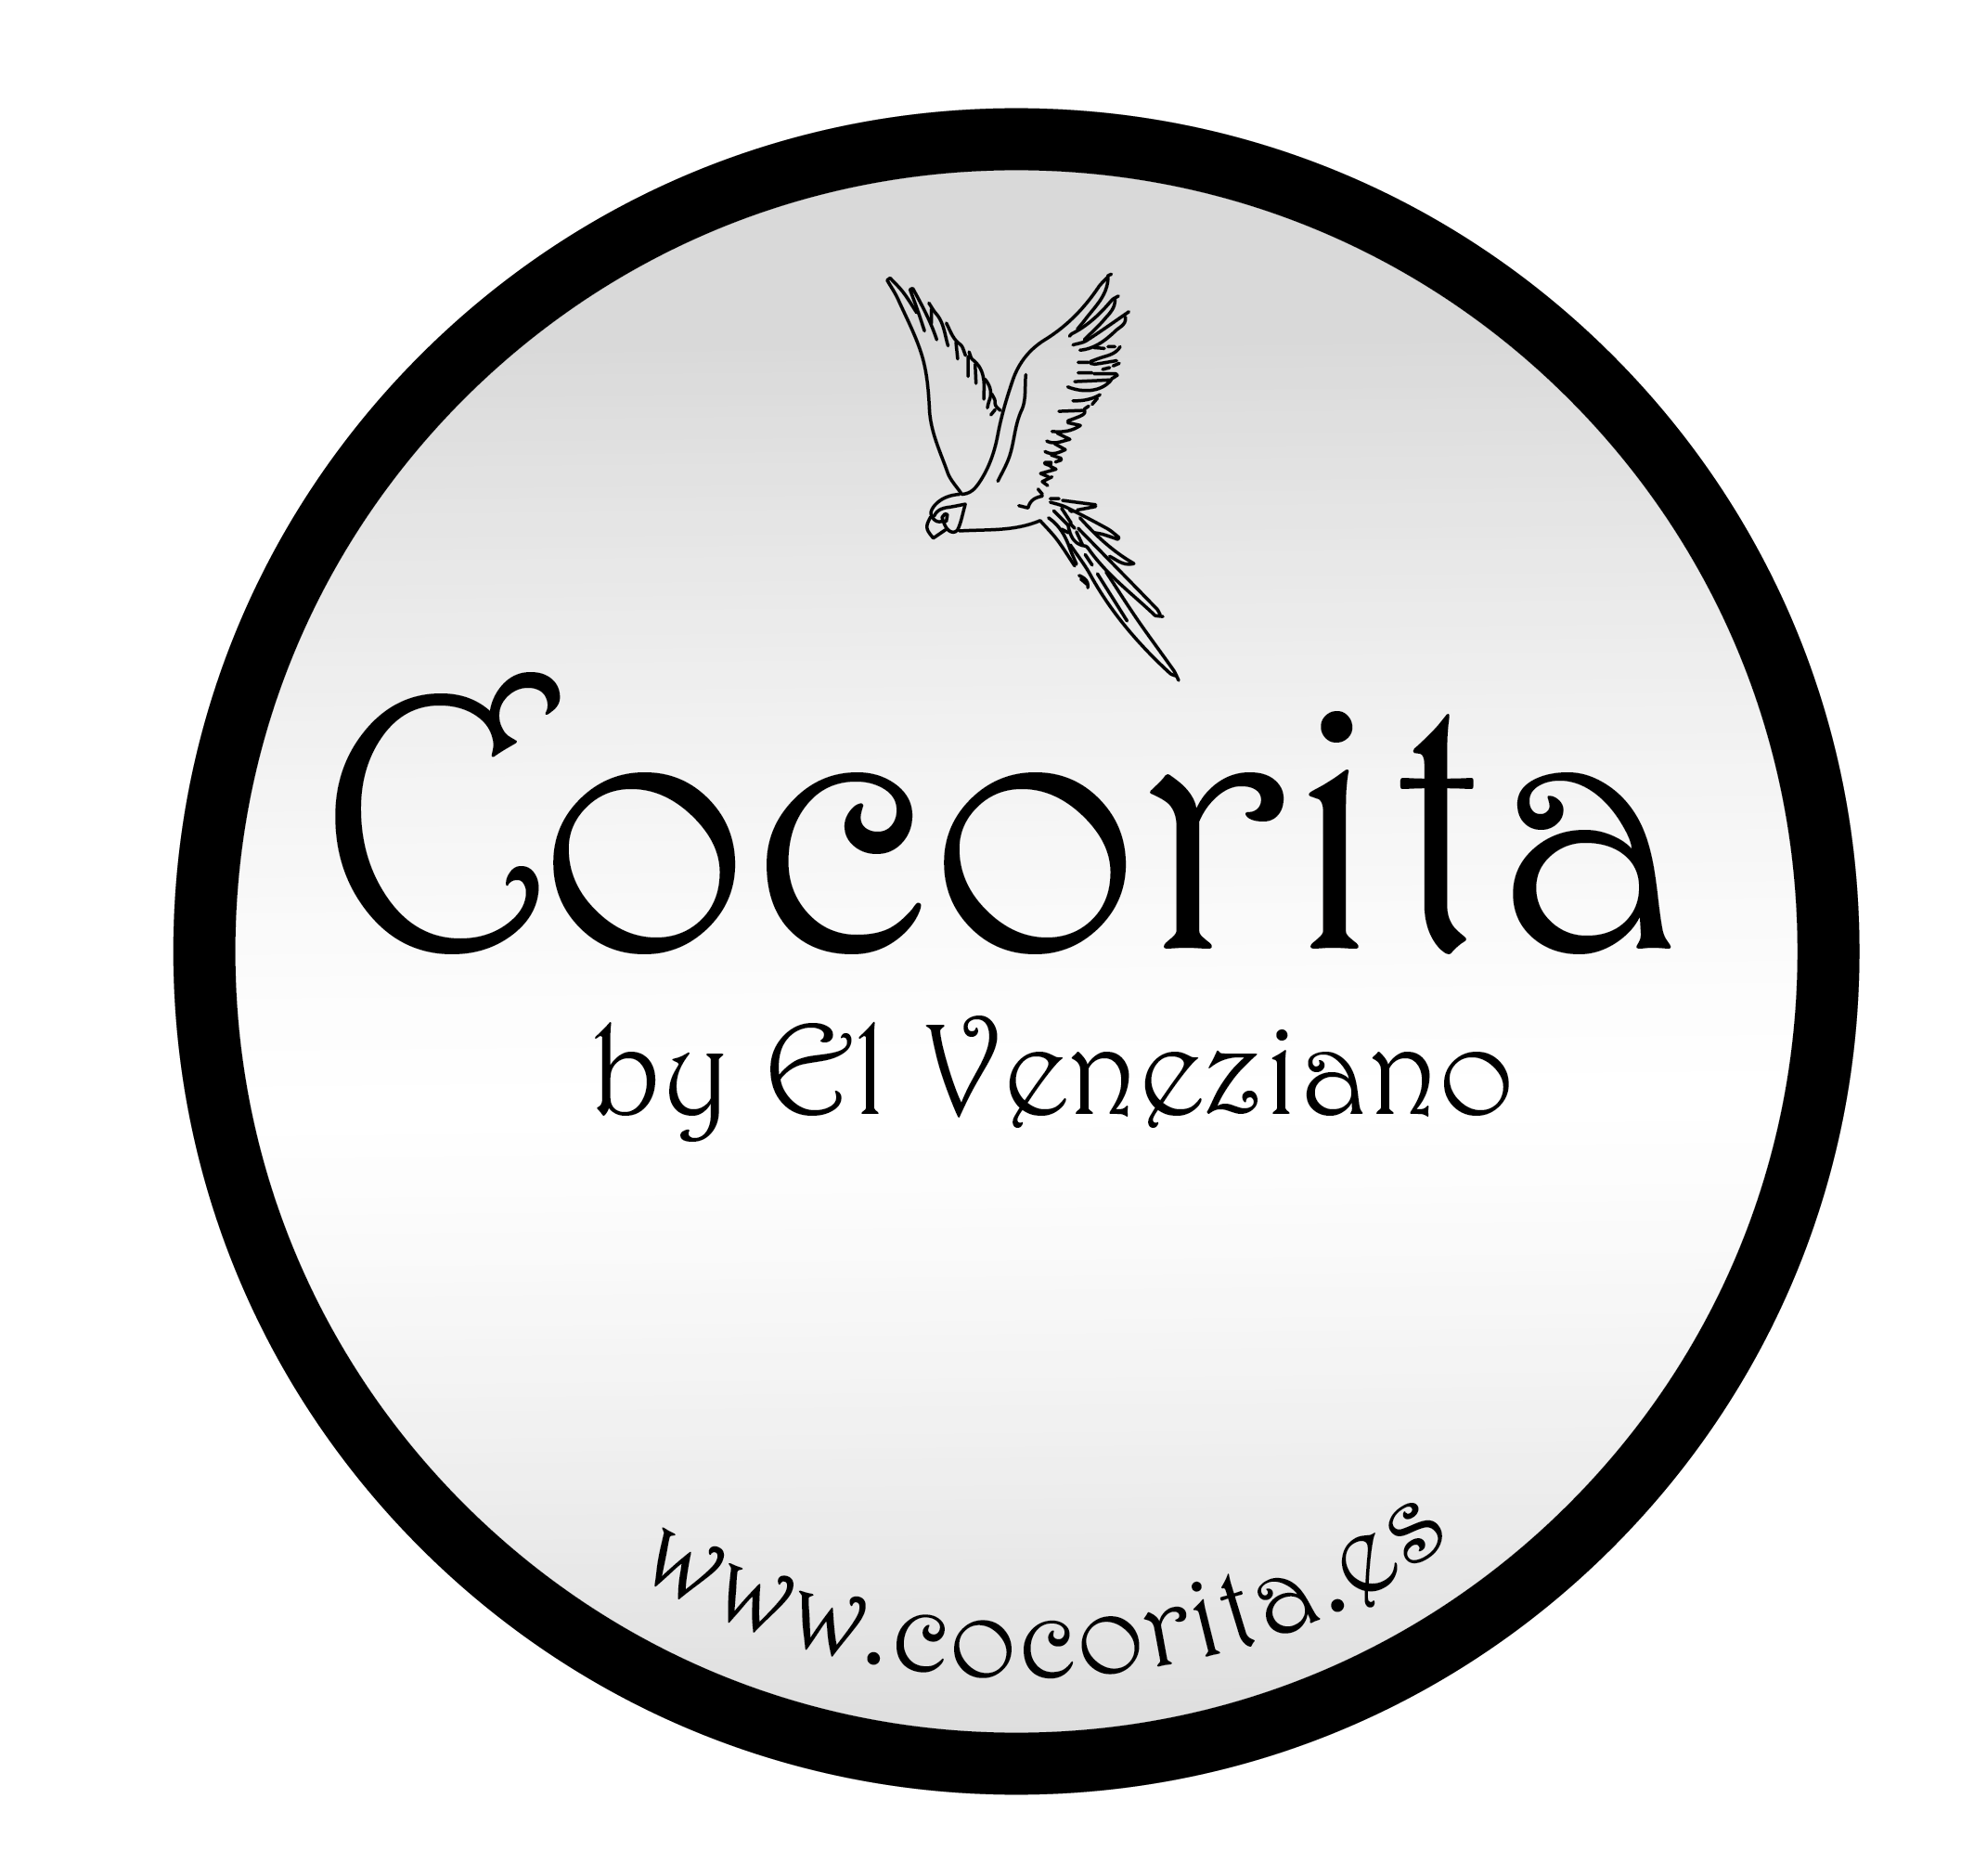 Cocorita